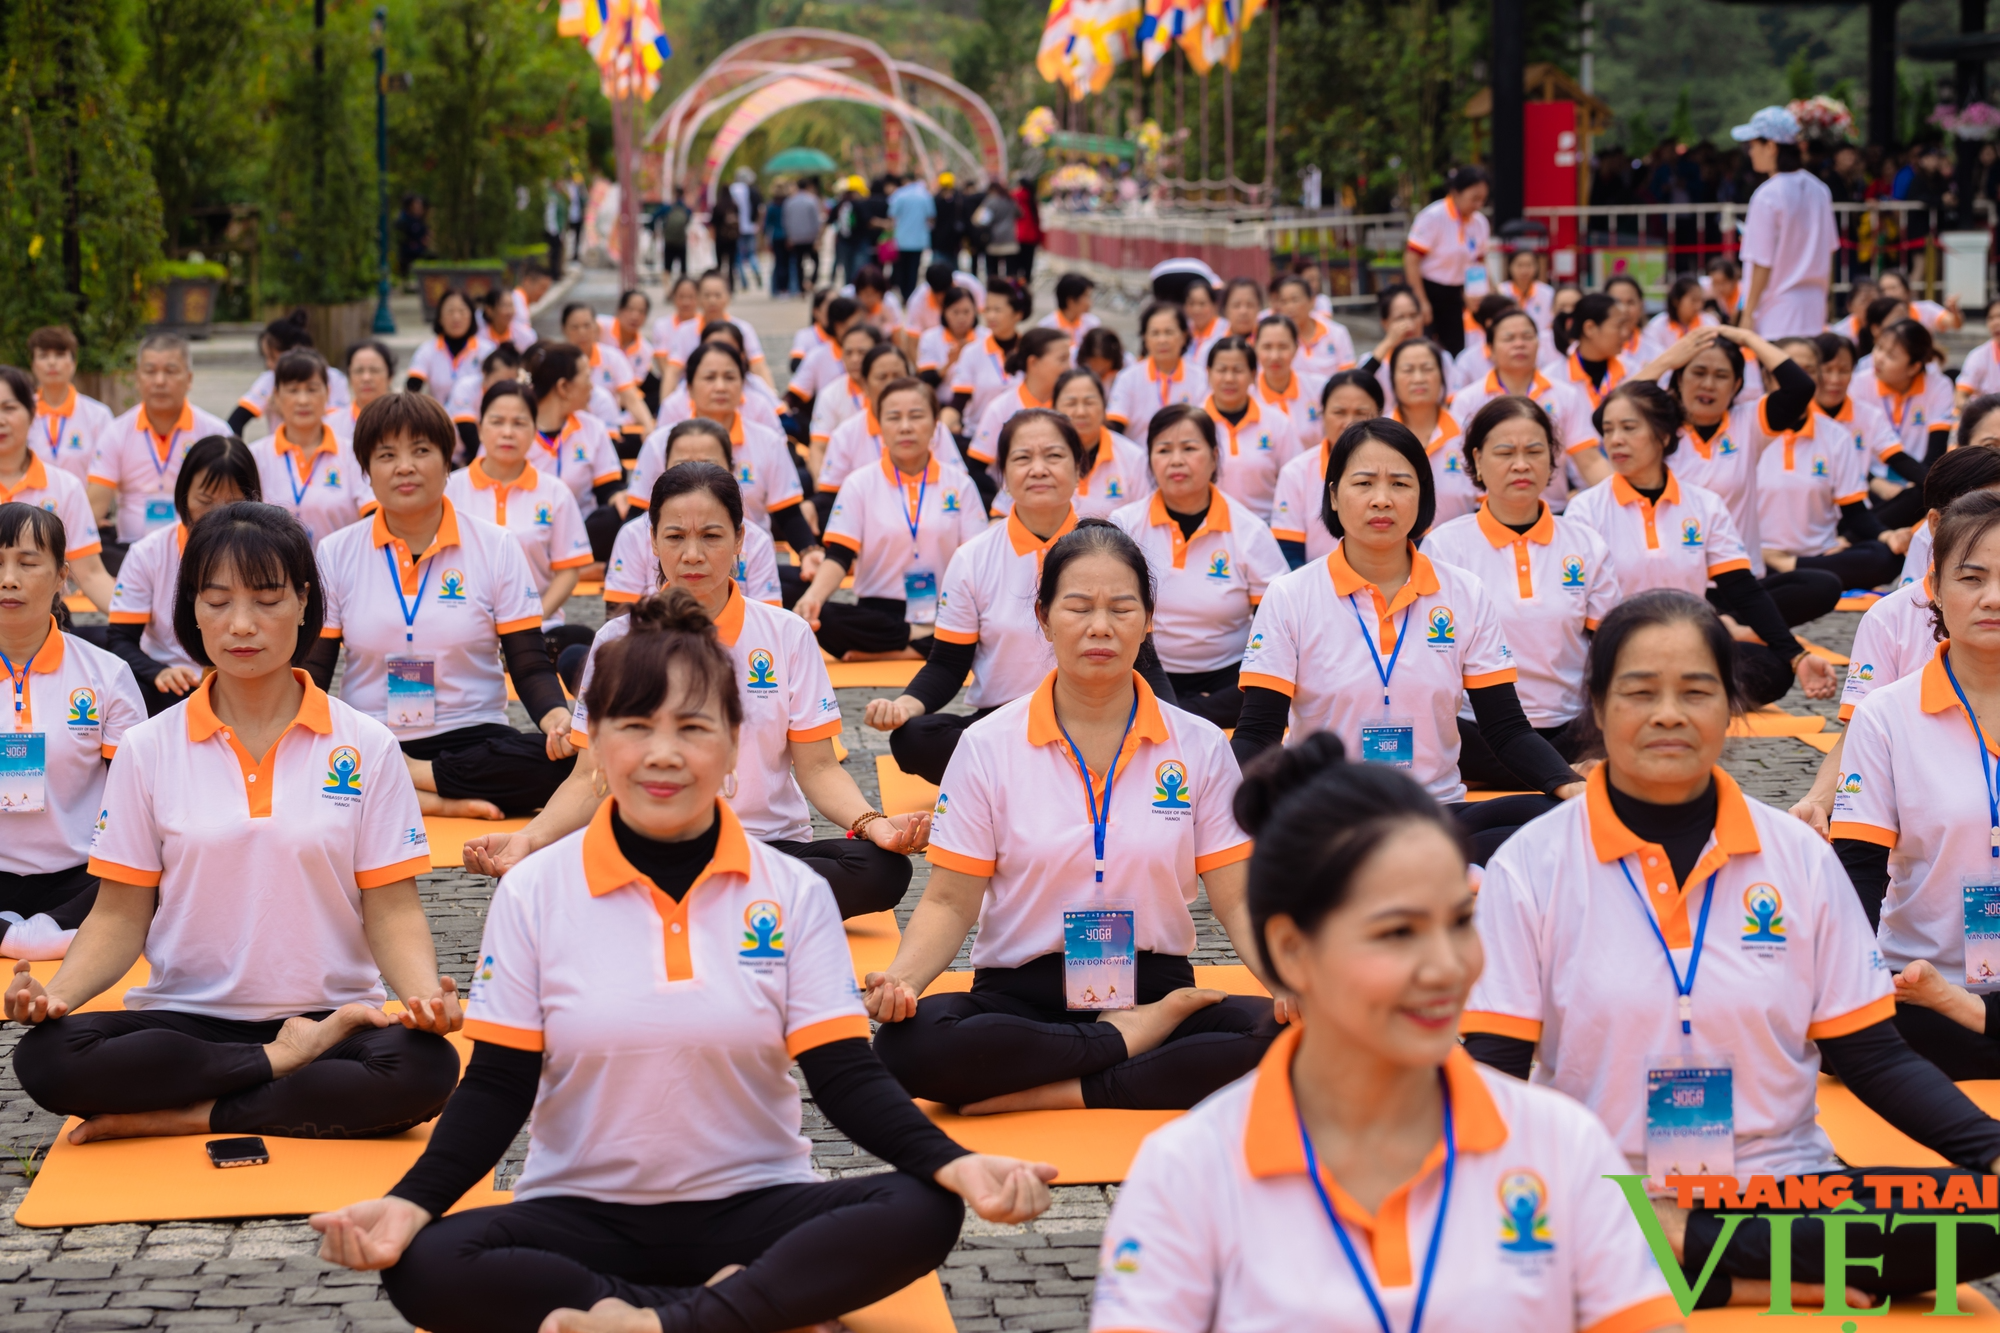 Ngày Quốc tế Yoga lần thứ 9: Tăng cường, mở rộng quan hệ hợp tác giữa 2 nước Việt Nam - Ấn Độ - Ảnh 4.